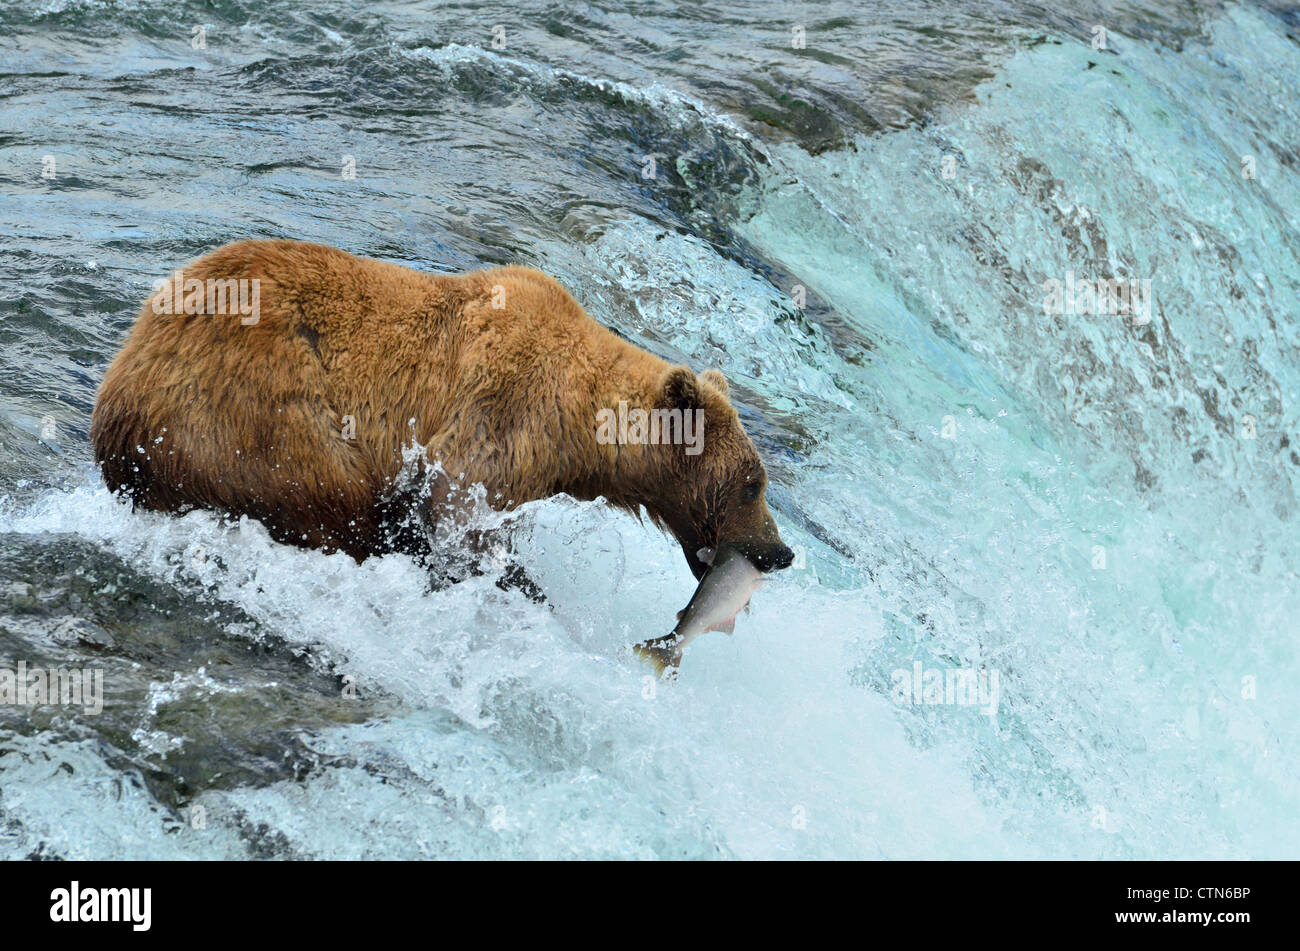 Imagen icónica de Katmai,un oso pardo le arrebatara una salmones saltando el Brooks Falls. Parque Nacional Katmai y preservar. Alaska, EE.UU. Foto de stock